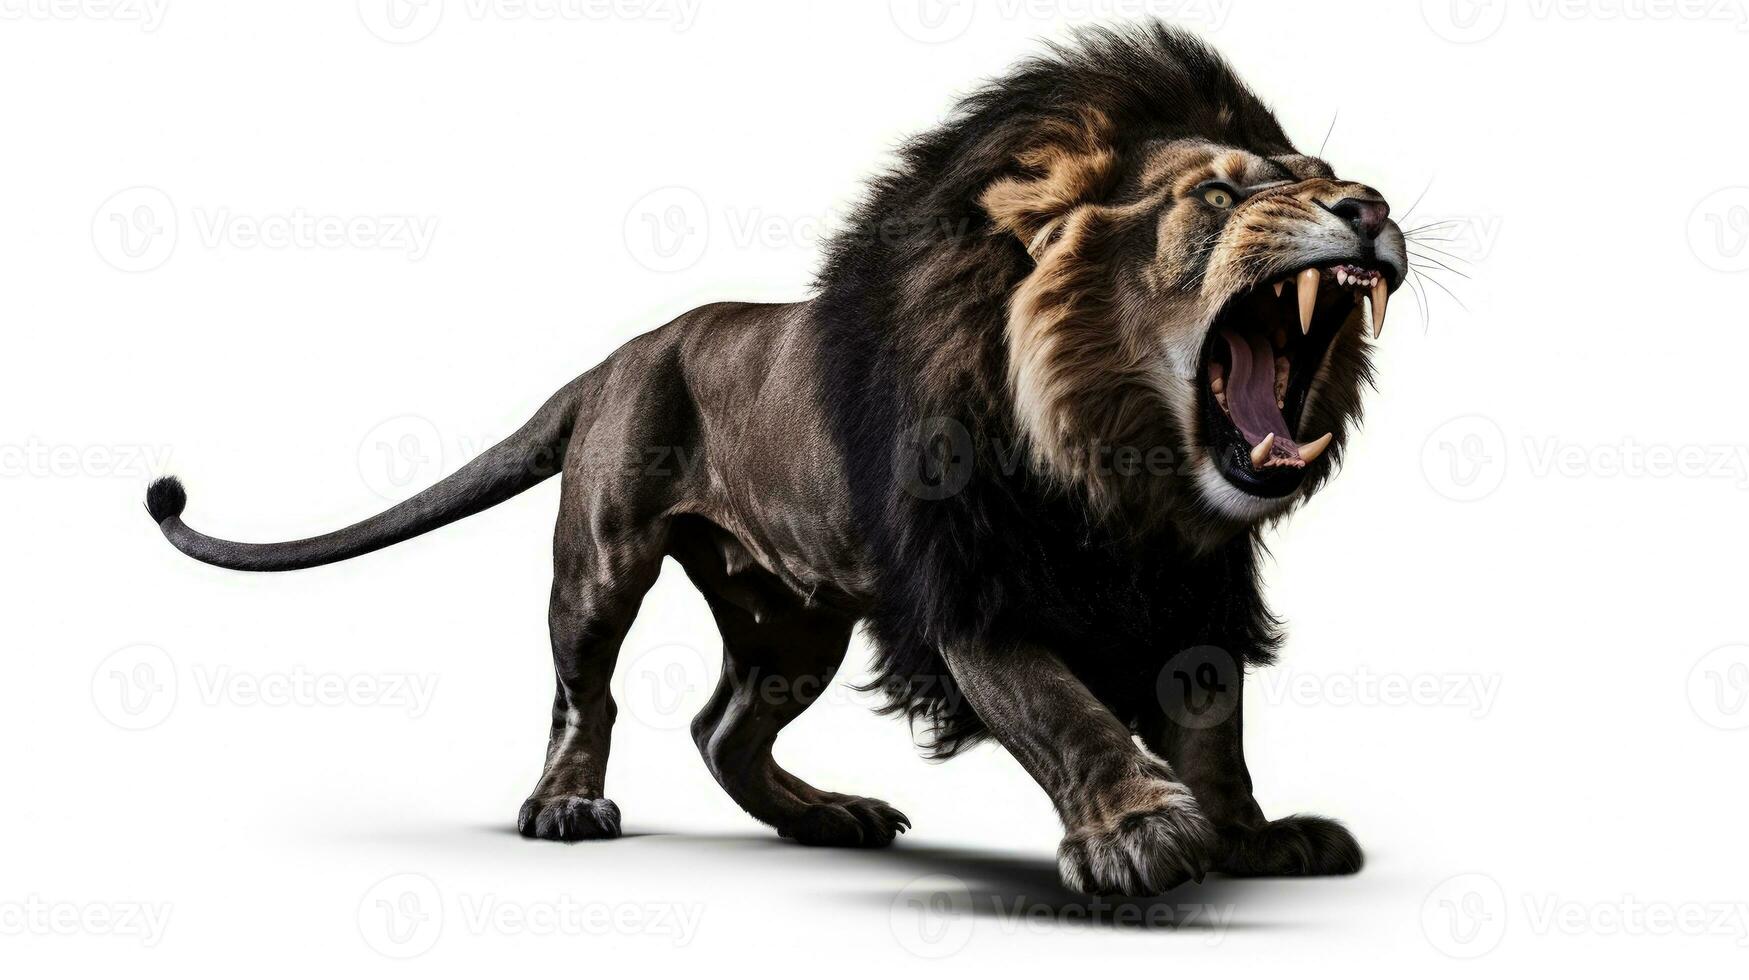 adulto masculino león panthera León saltando con abierto boca en blanco antecedentes. silueta concepto foto